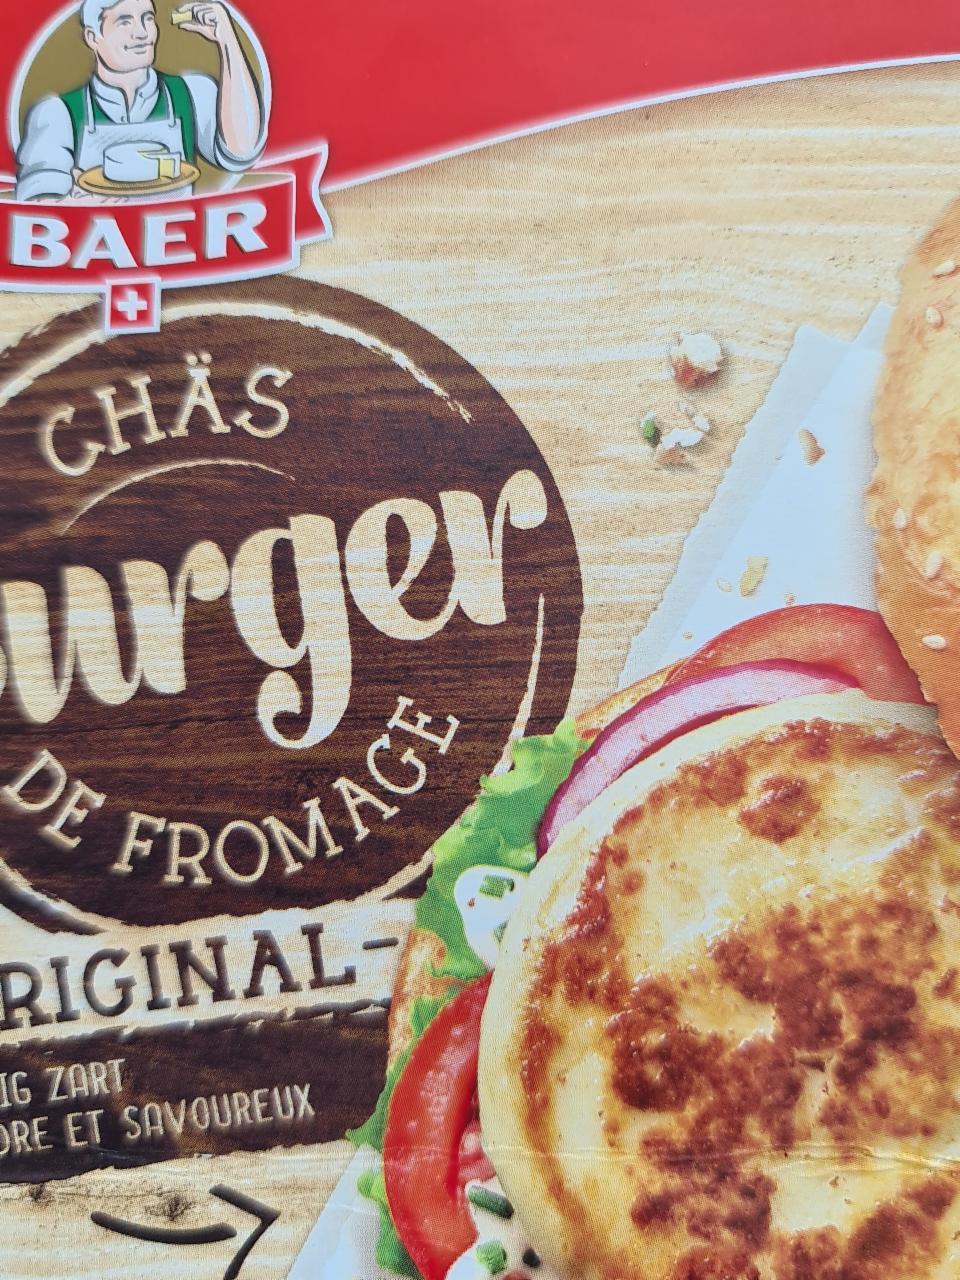 Fotografie - Chäs Burger de fromage Baer